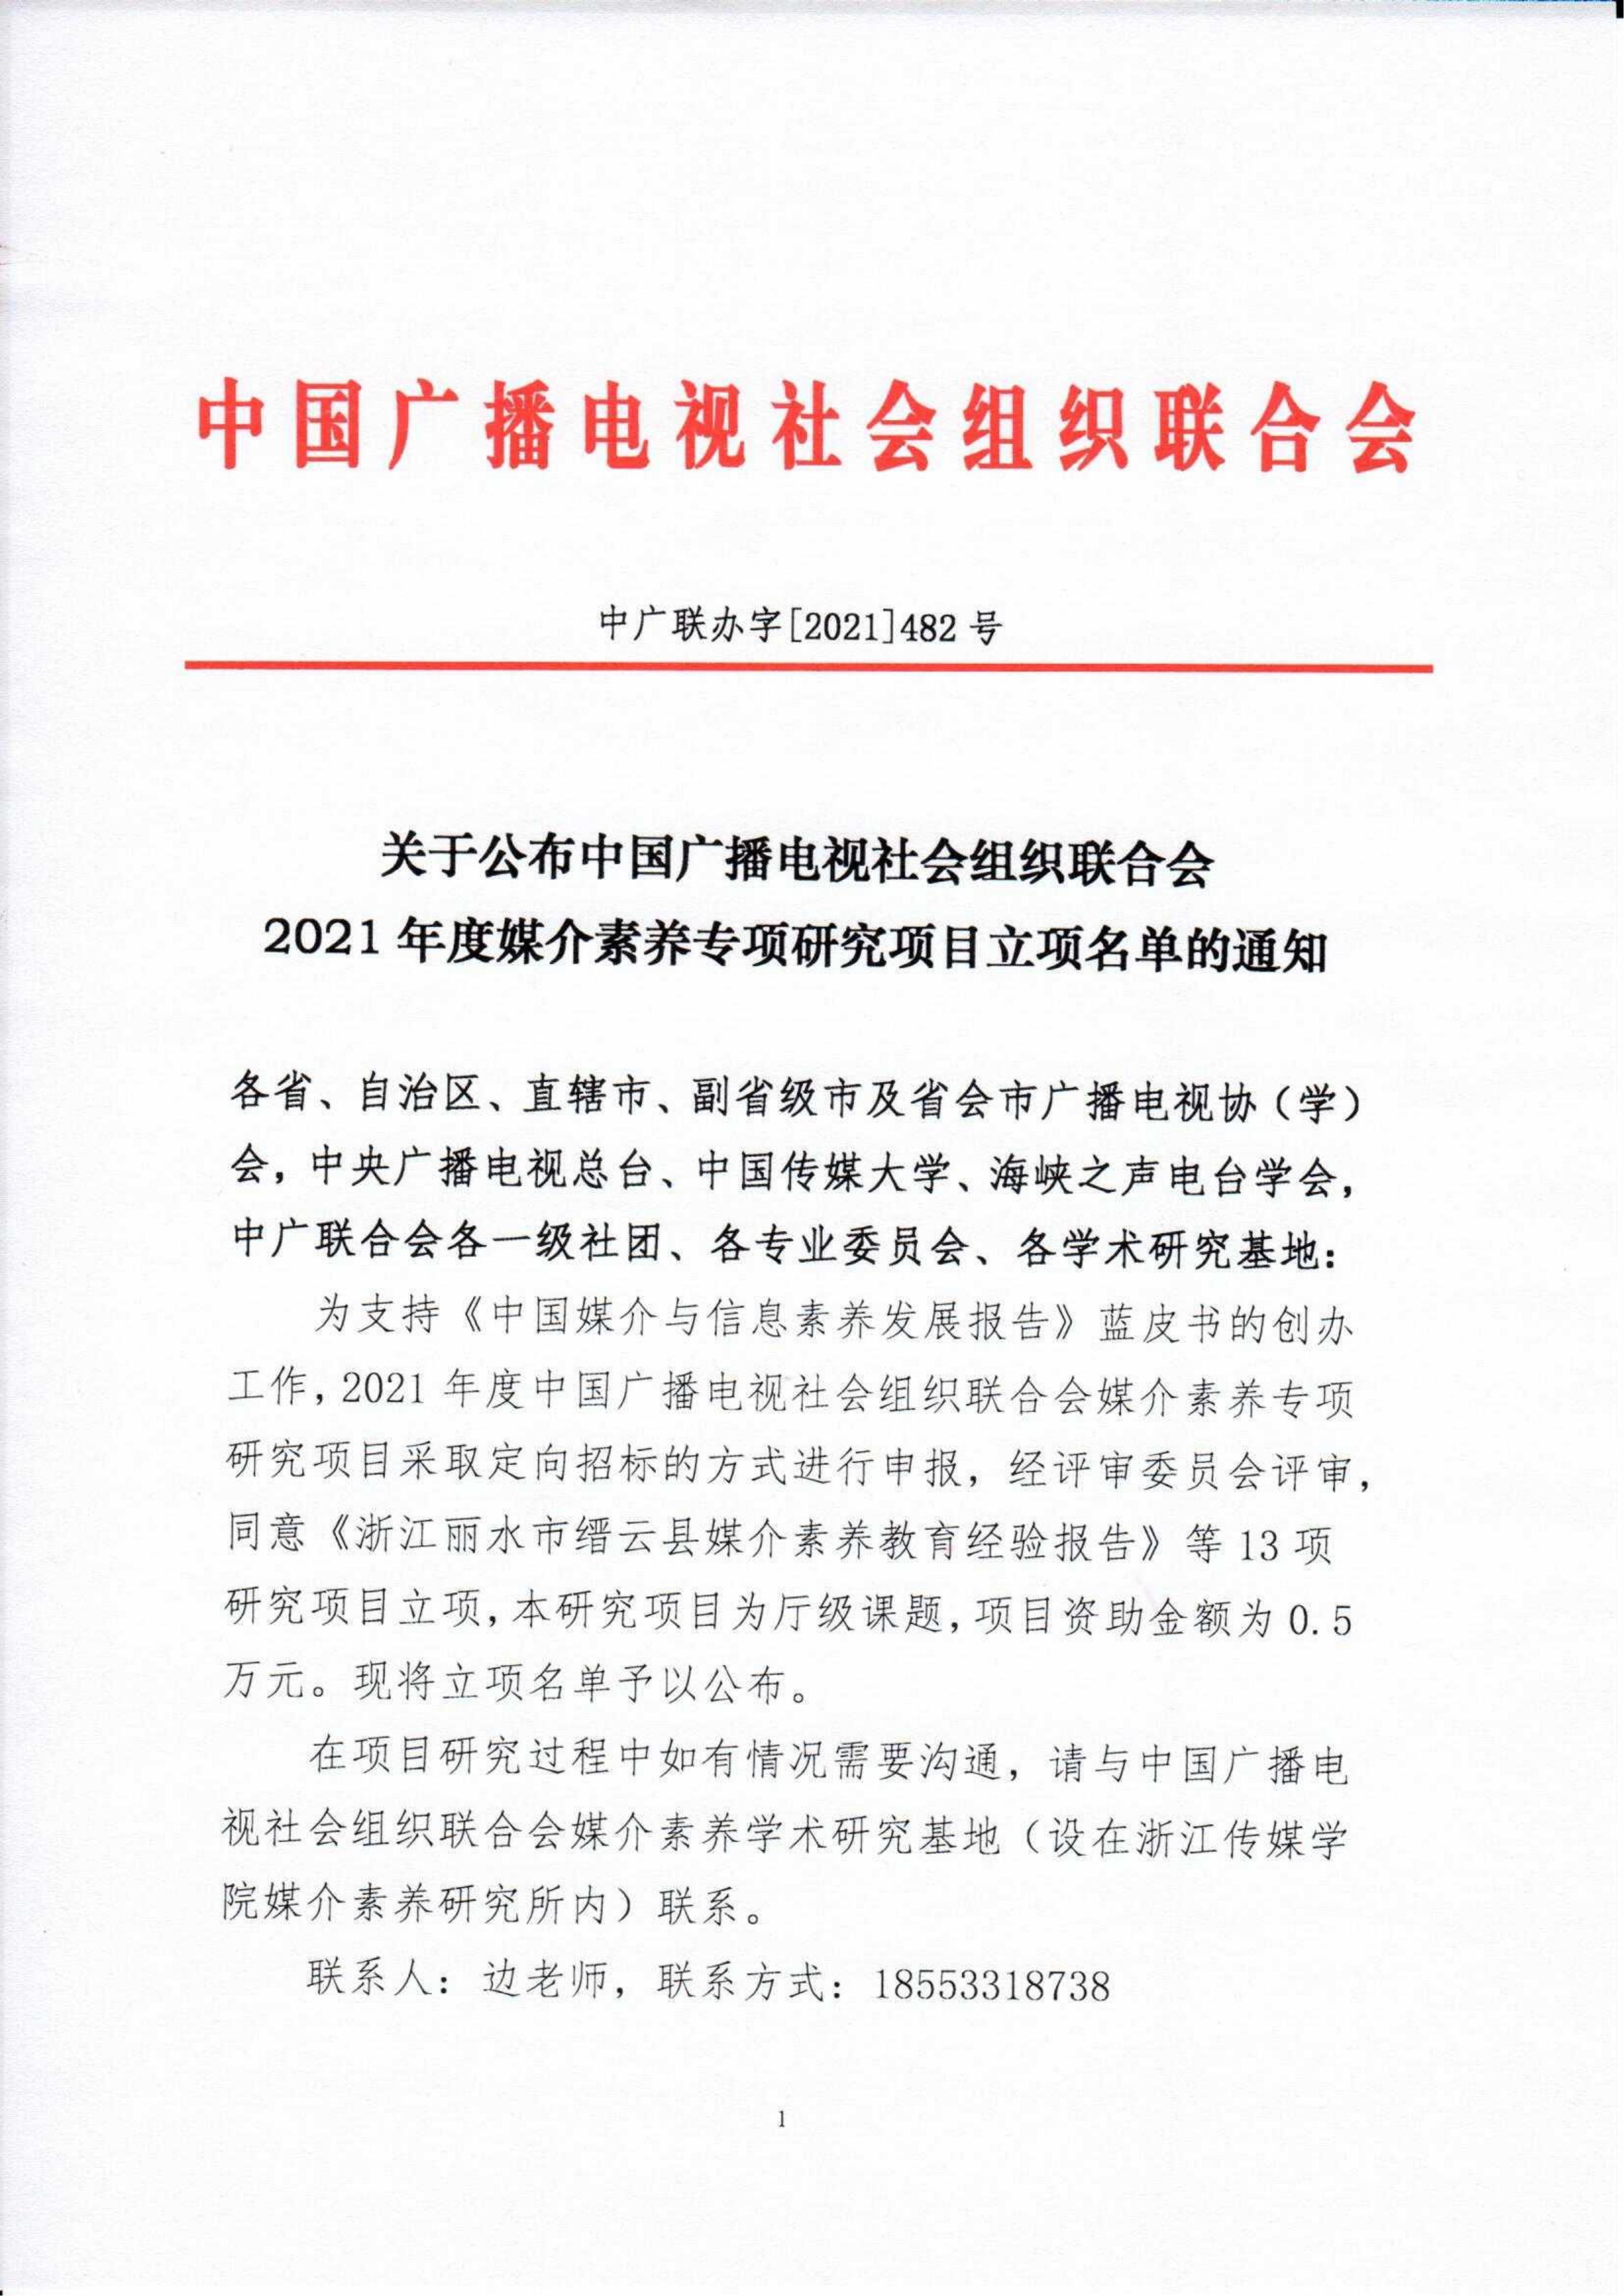 关于公布中国广播电视社会组织联合会2021年度媒介素养专项研究项目立项名单的通知_fororder_红头 媒介素养学术研究基地2021年度立项名单的通知（最终）_00